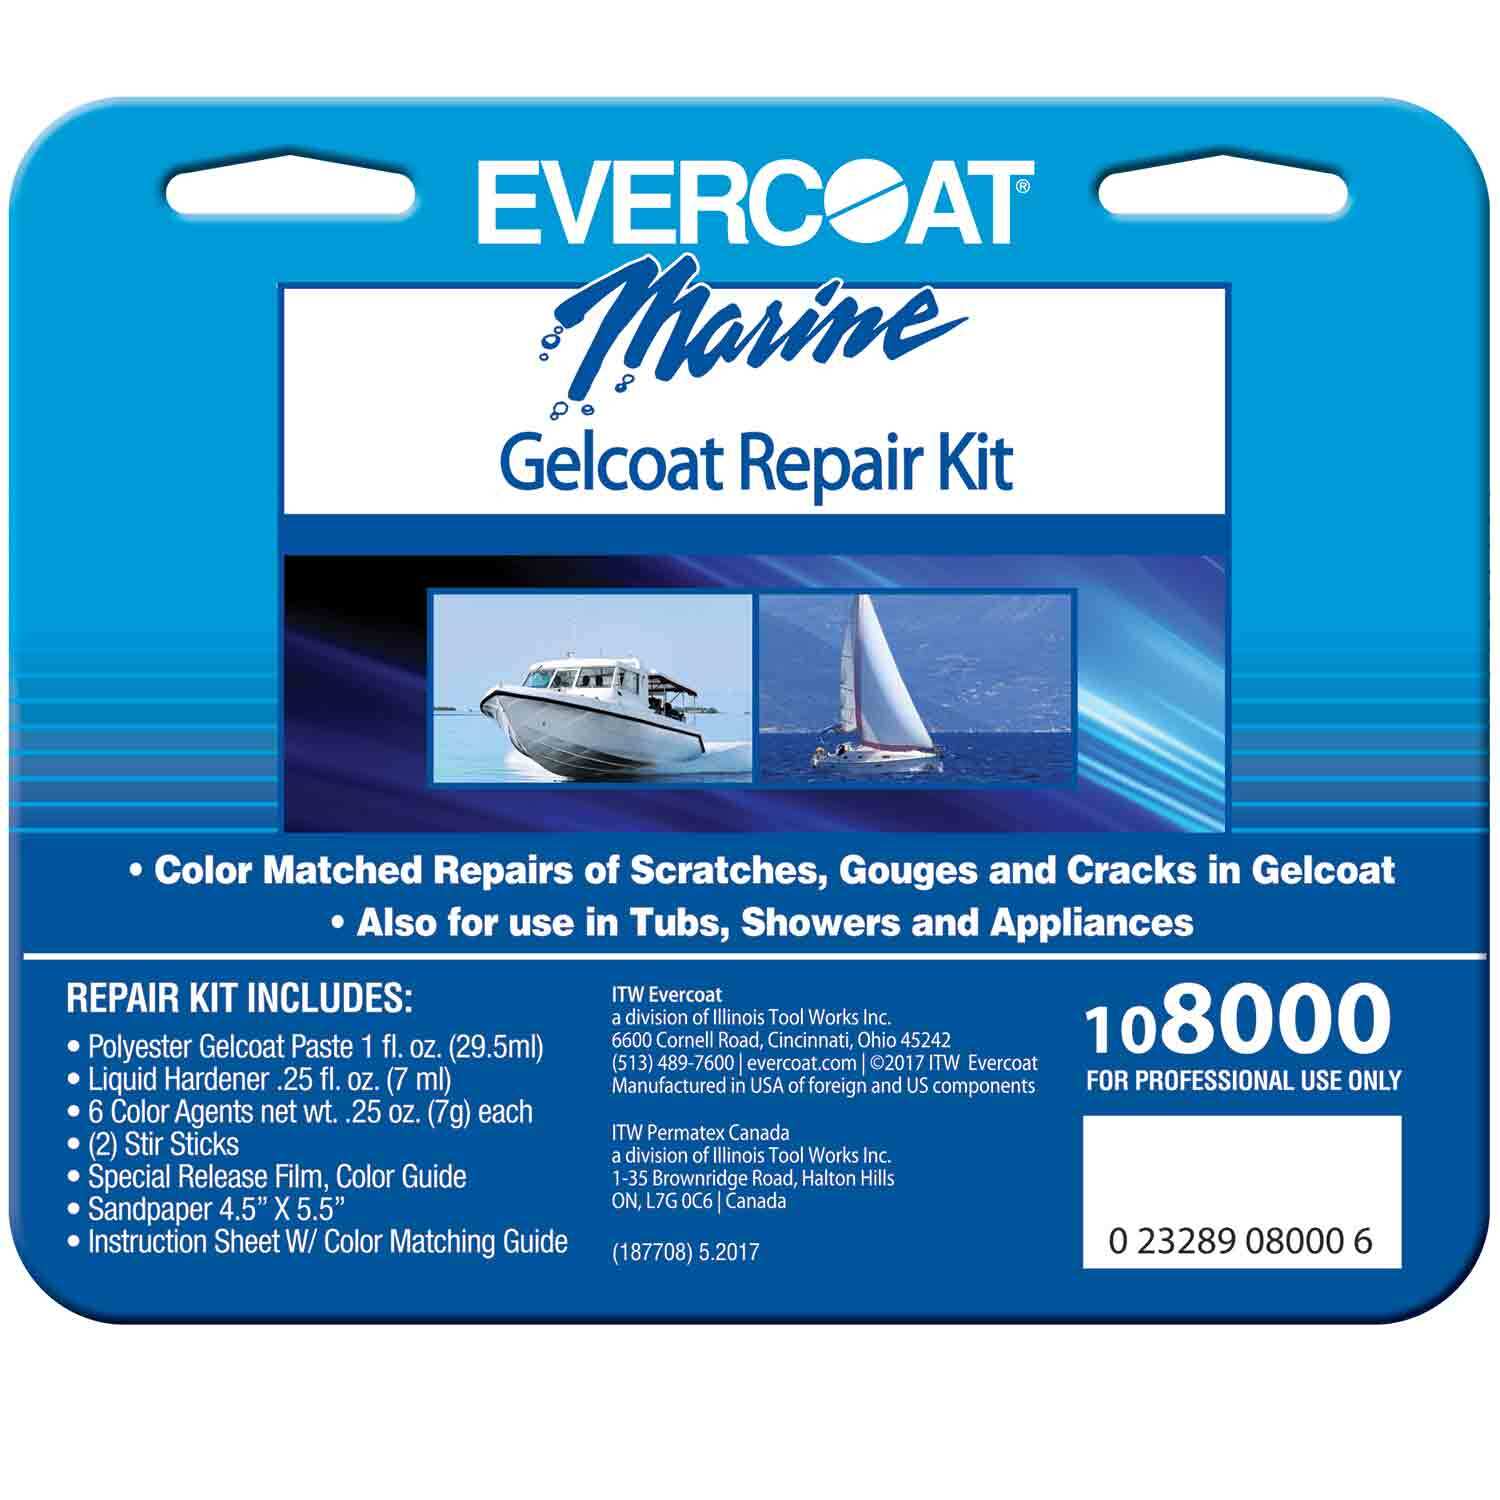 Evercoat 100637 Fiberglass Repair Kit, 1/2 Pint